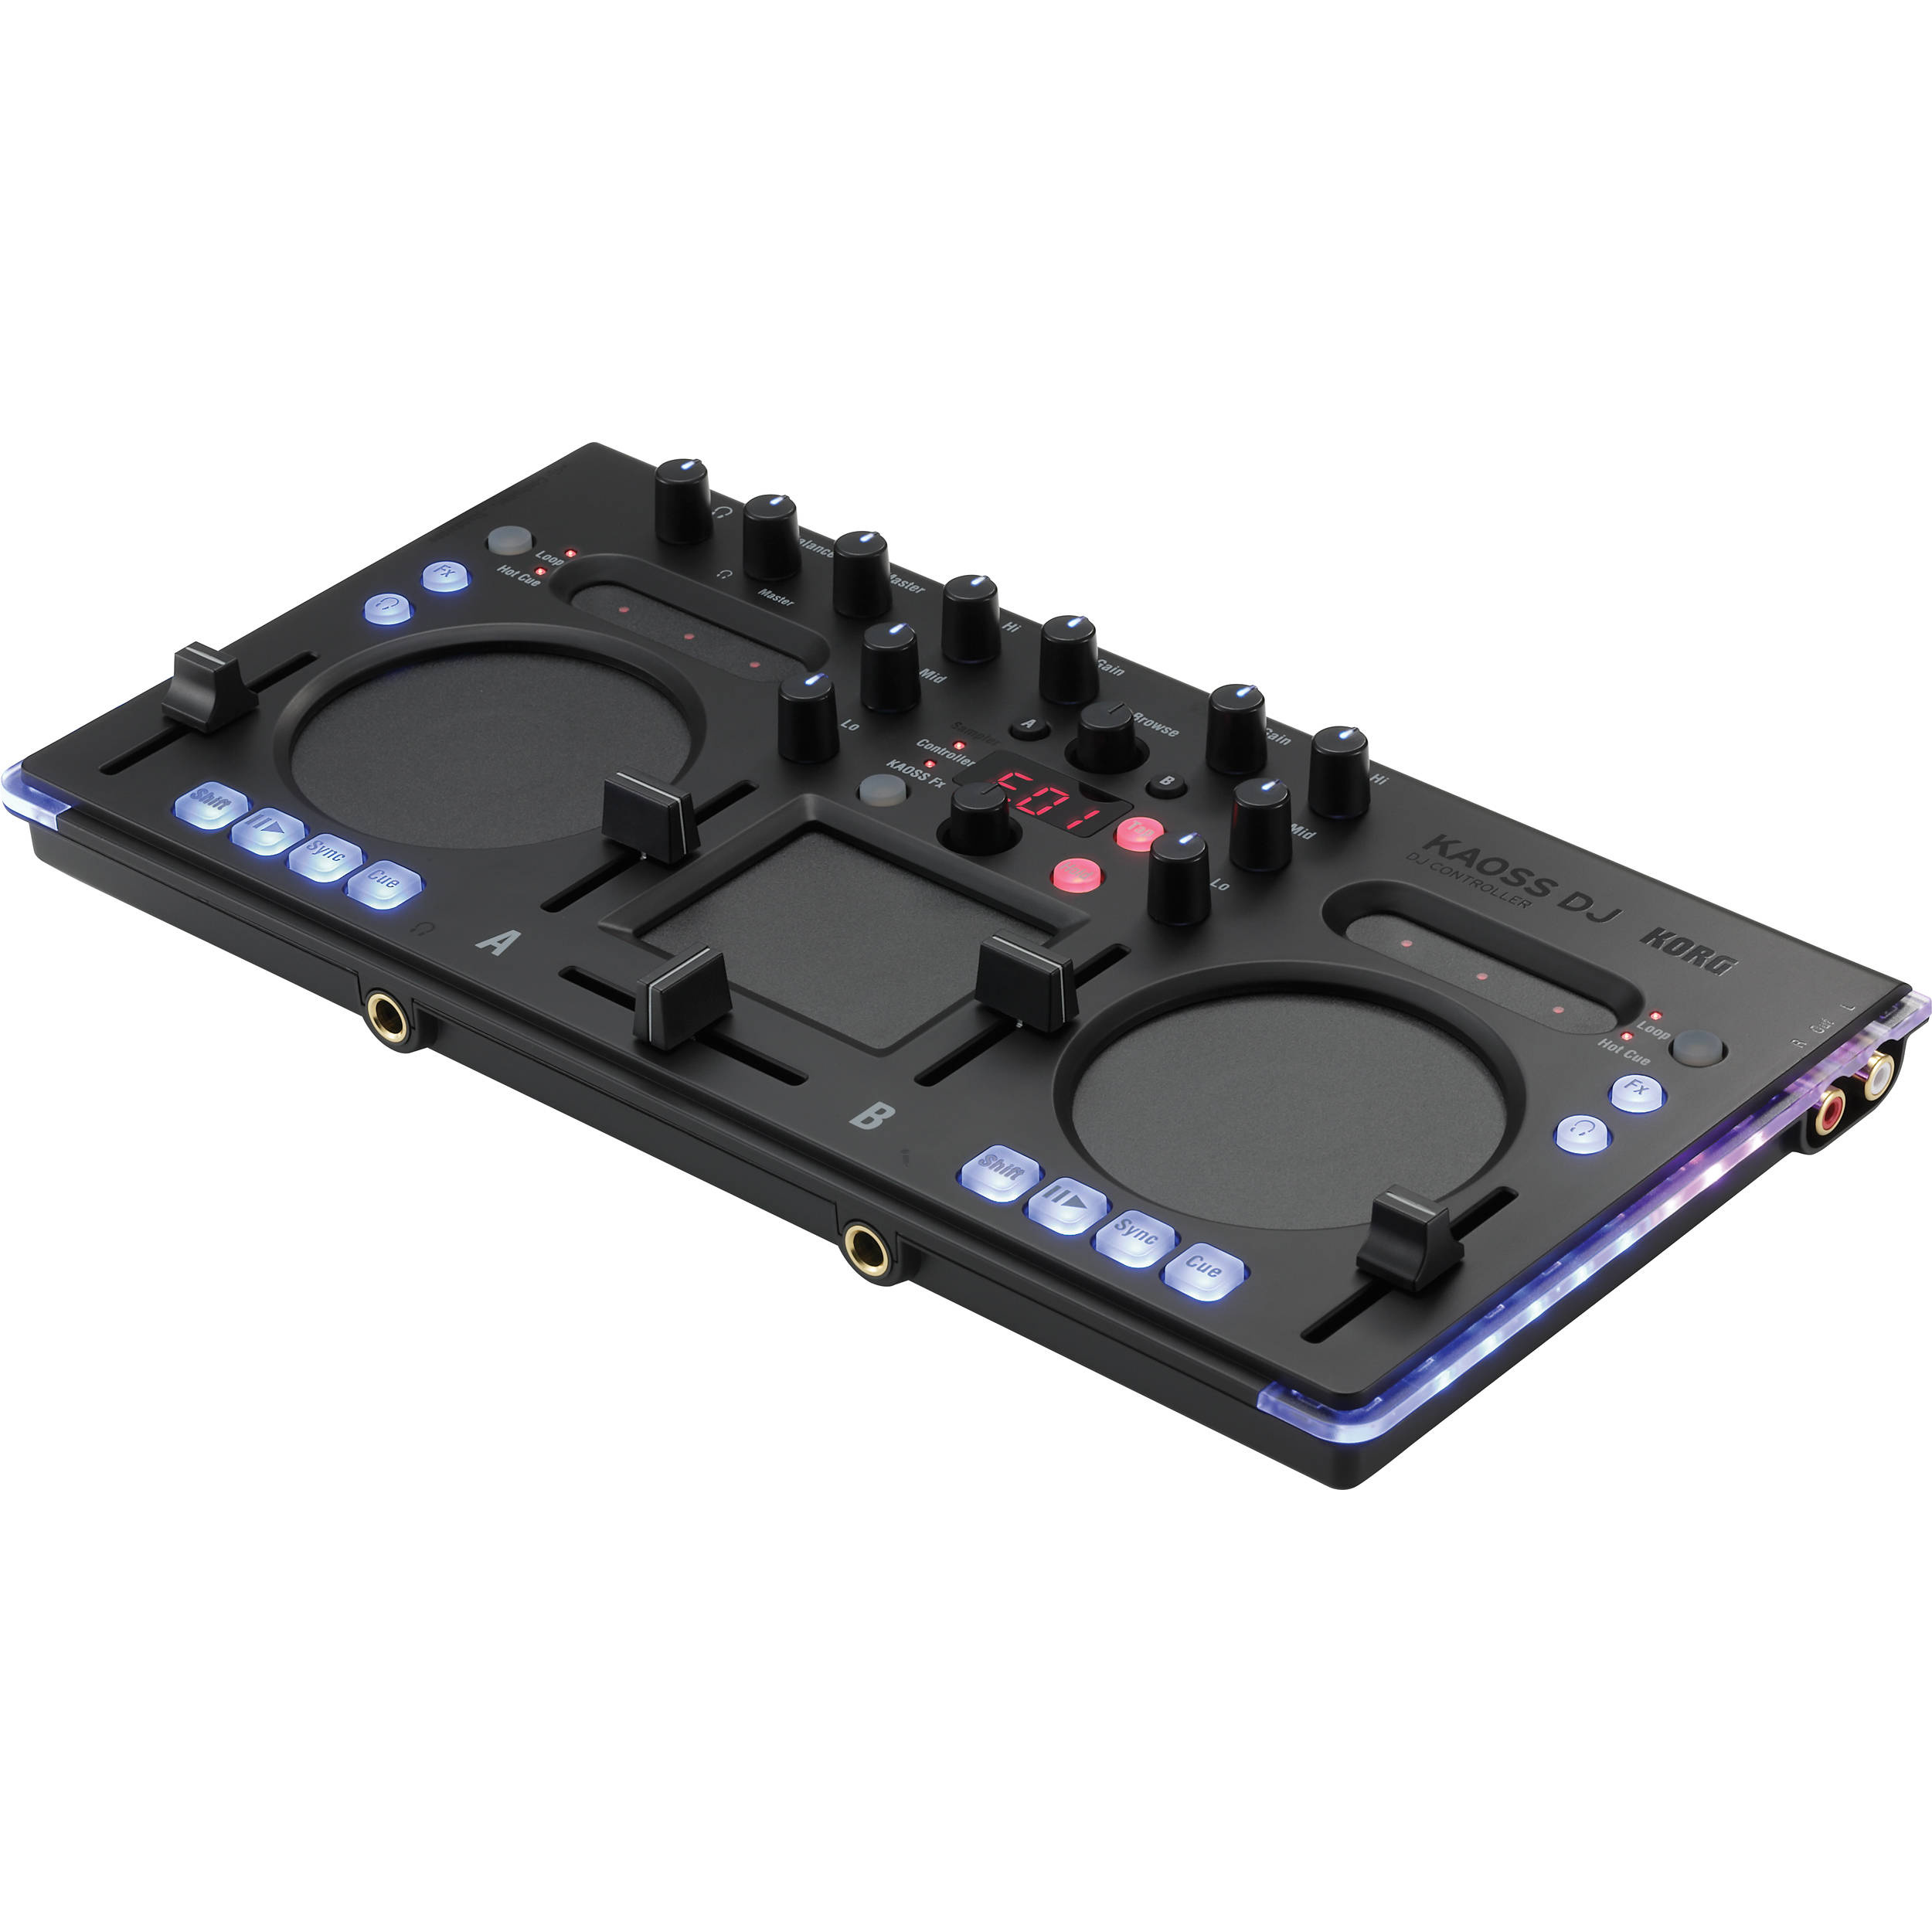 Korg Kaoss DJ Controller, Audio Interface, and Standalone Mixer